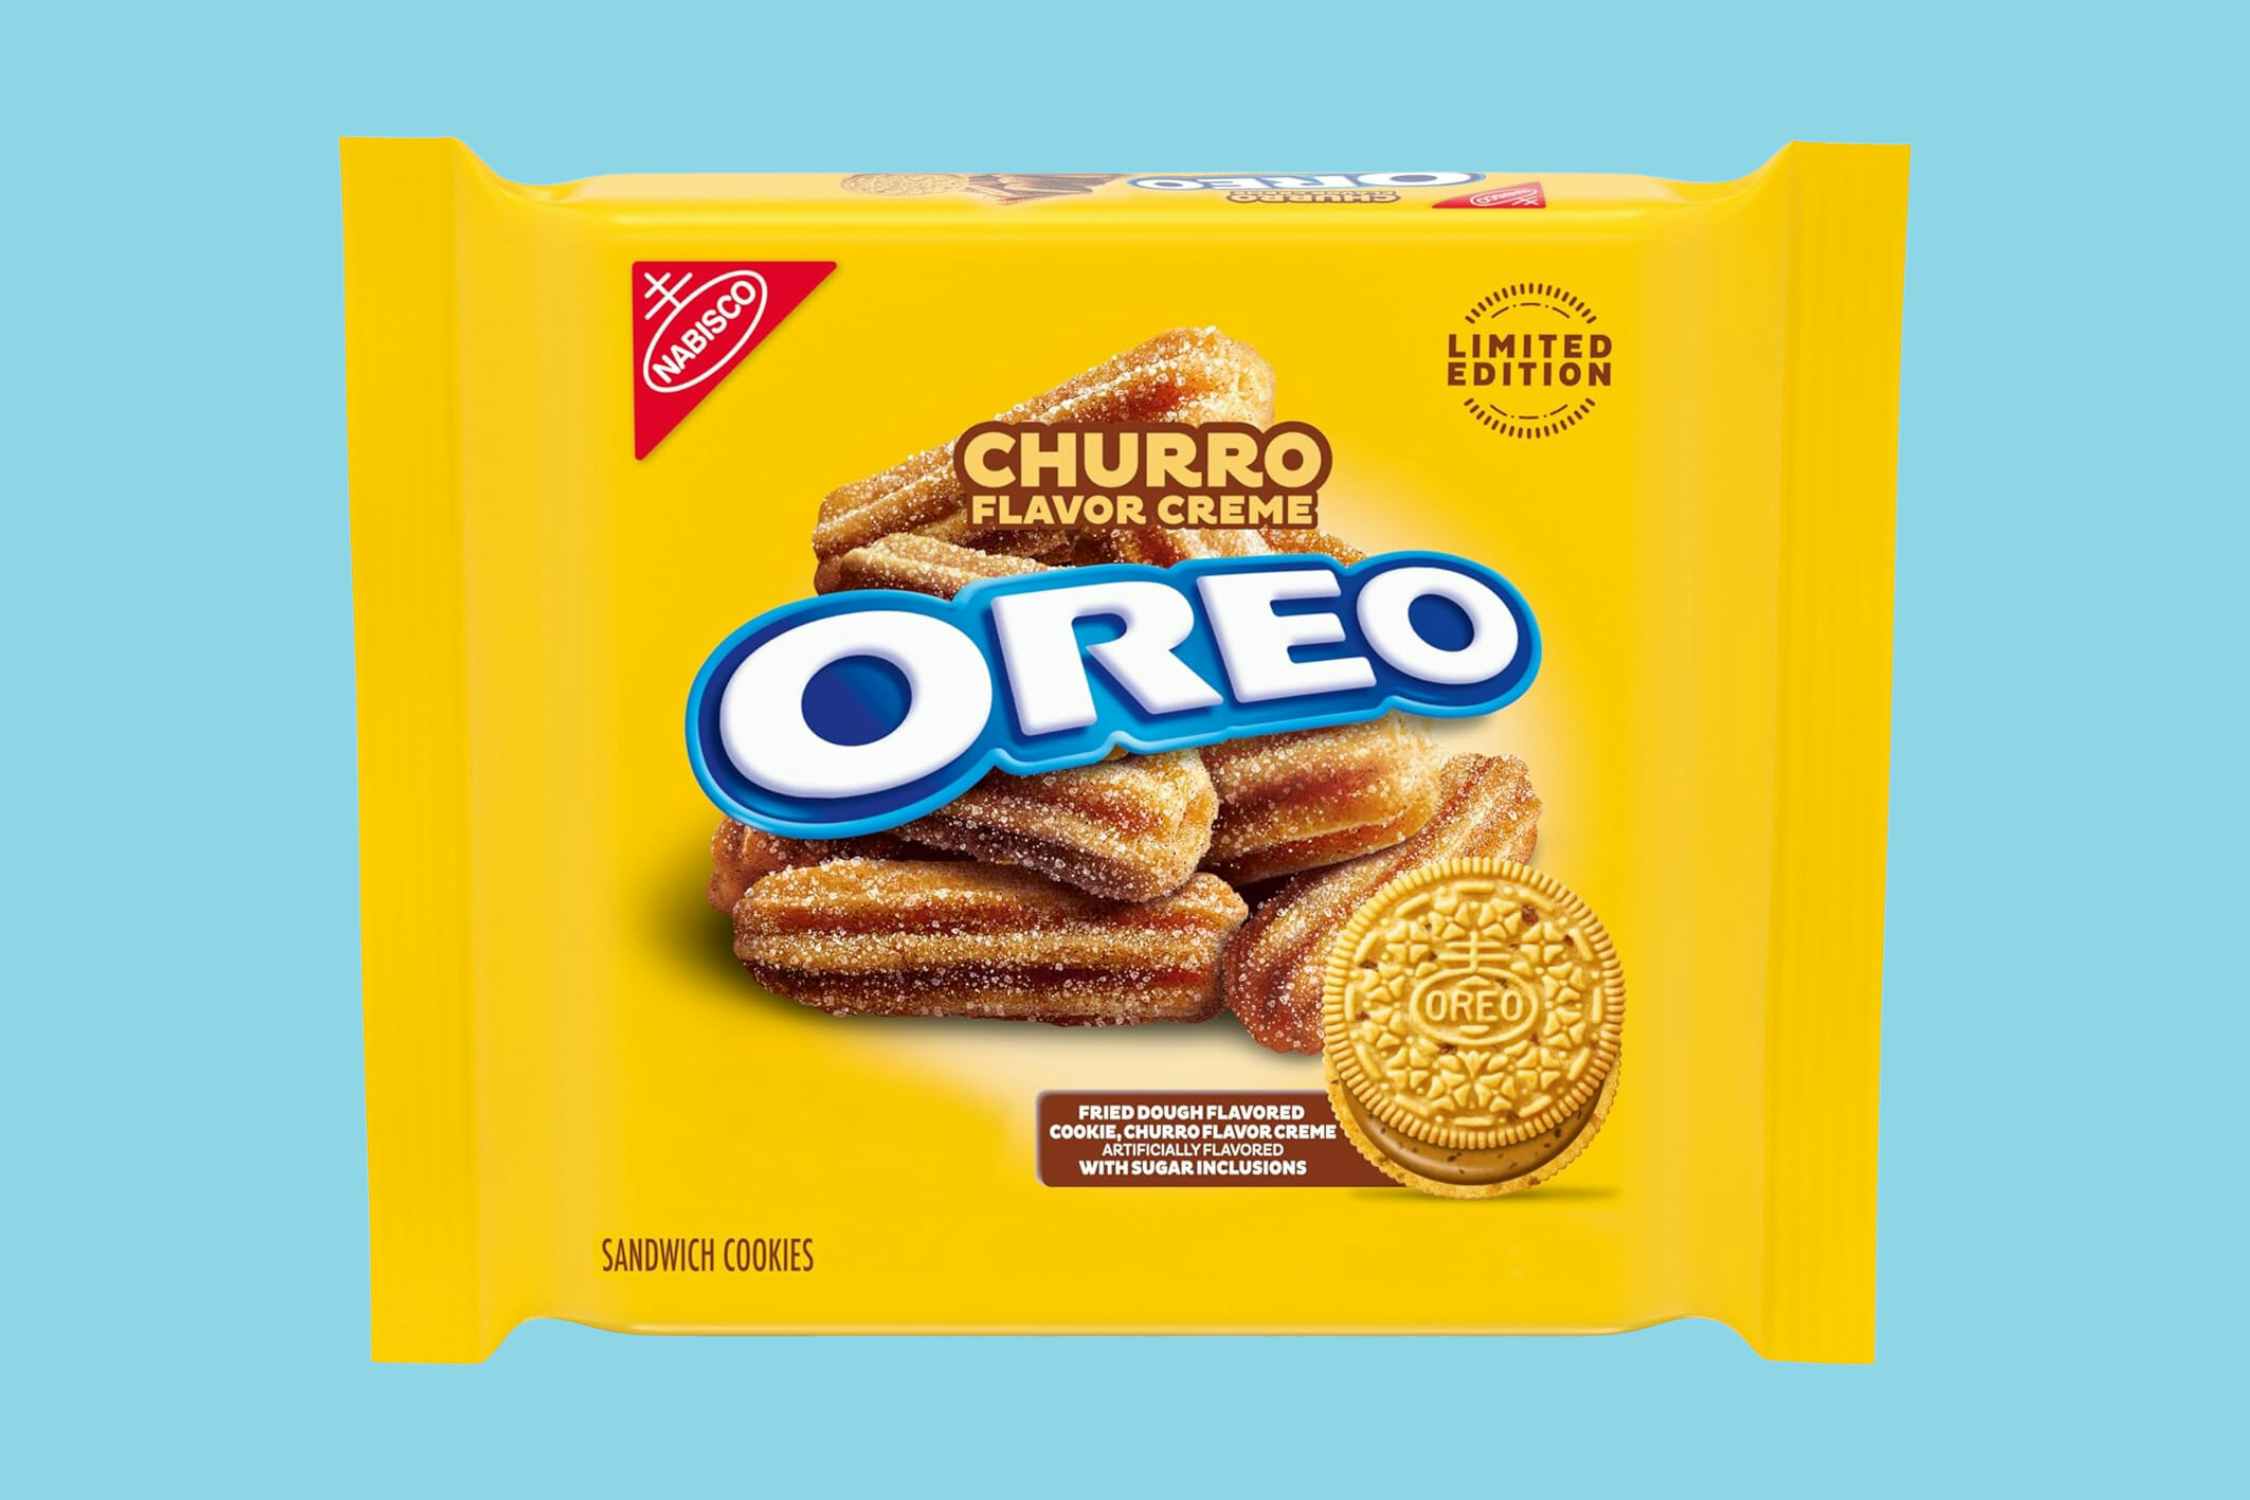 Oreo Churro Sandwich Cookies, Just $2.78 on Amazon